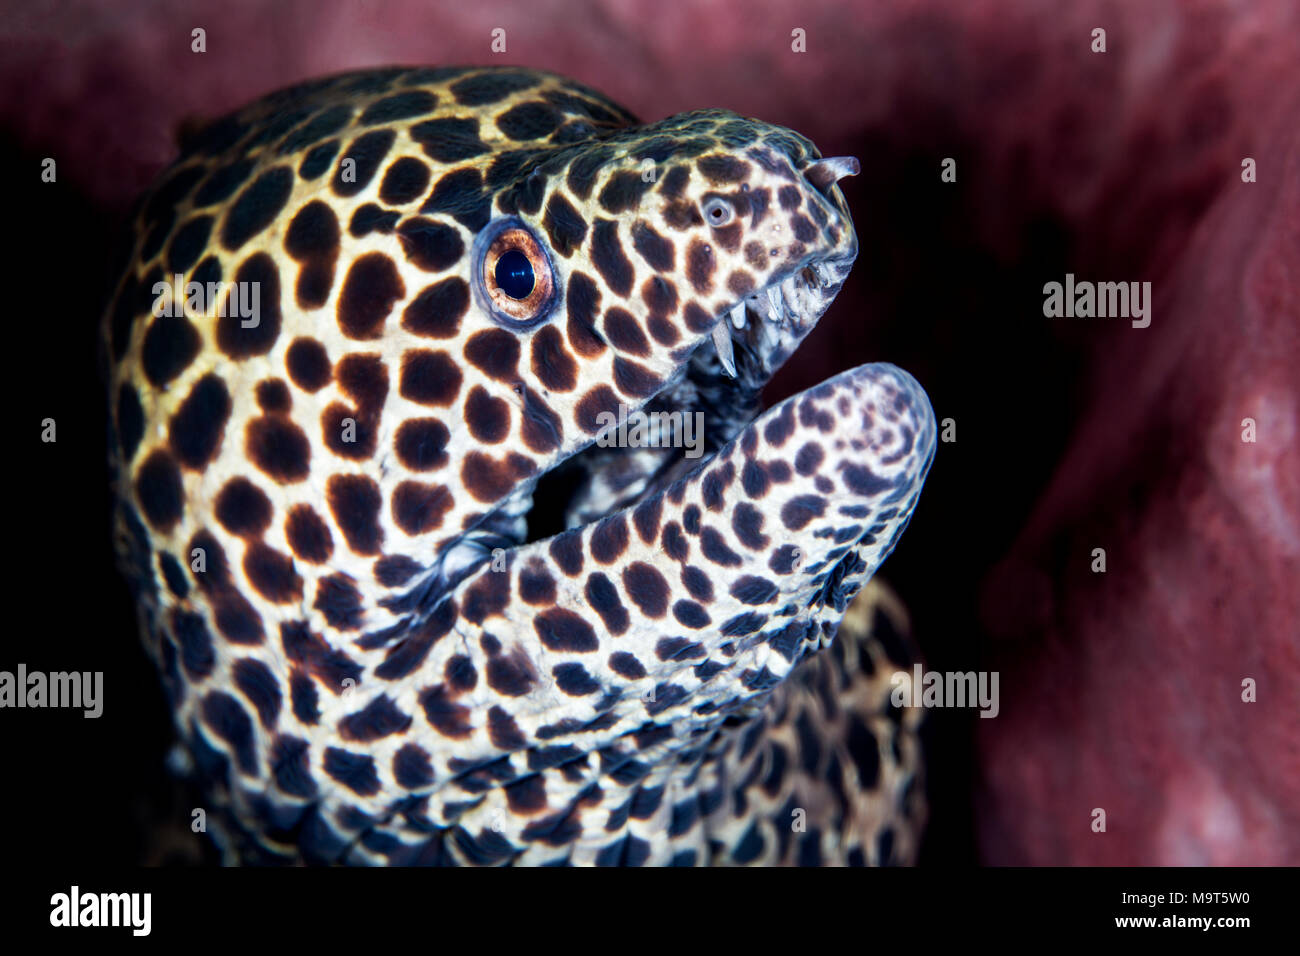 Laced moray, leopard moray, tessellate moray  or honeycomb moray's head close up Stock Photo